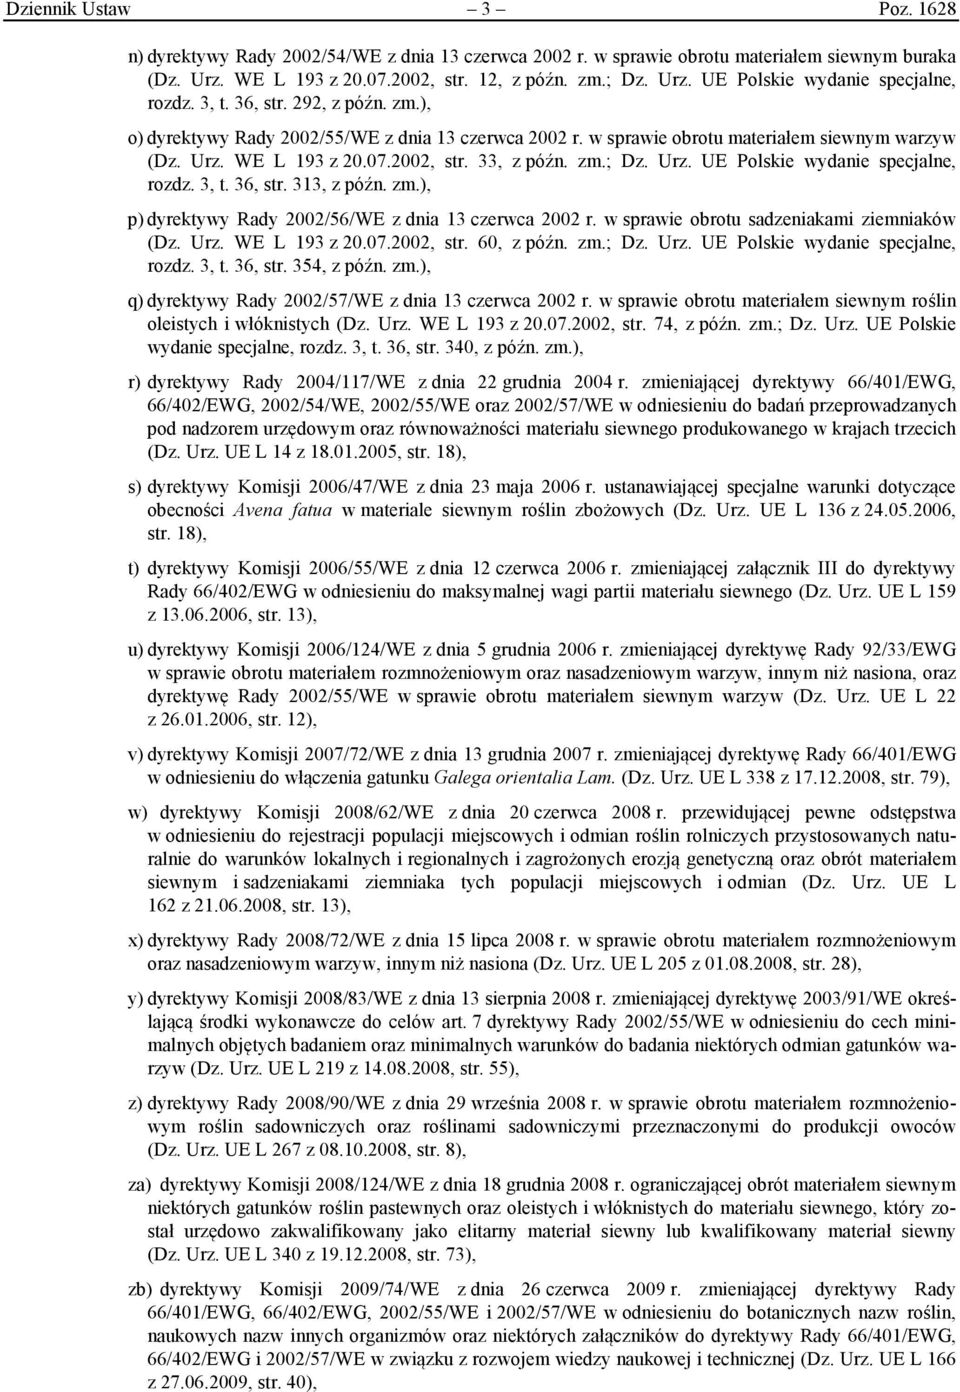 3, t. 36, str. 313, z późn. zm.), p) dyrektywy Rady 2002/56/WE z dnia 13 czerwca 2002 r. w sprawie obrotu sadzeniakami ziemniaków (Dz. Urz. WE L 193 z 20.07.2002, str. 60, z późn. zm.; Dz. Urz. UE Polskie wydanie specjalne, rozdz.